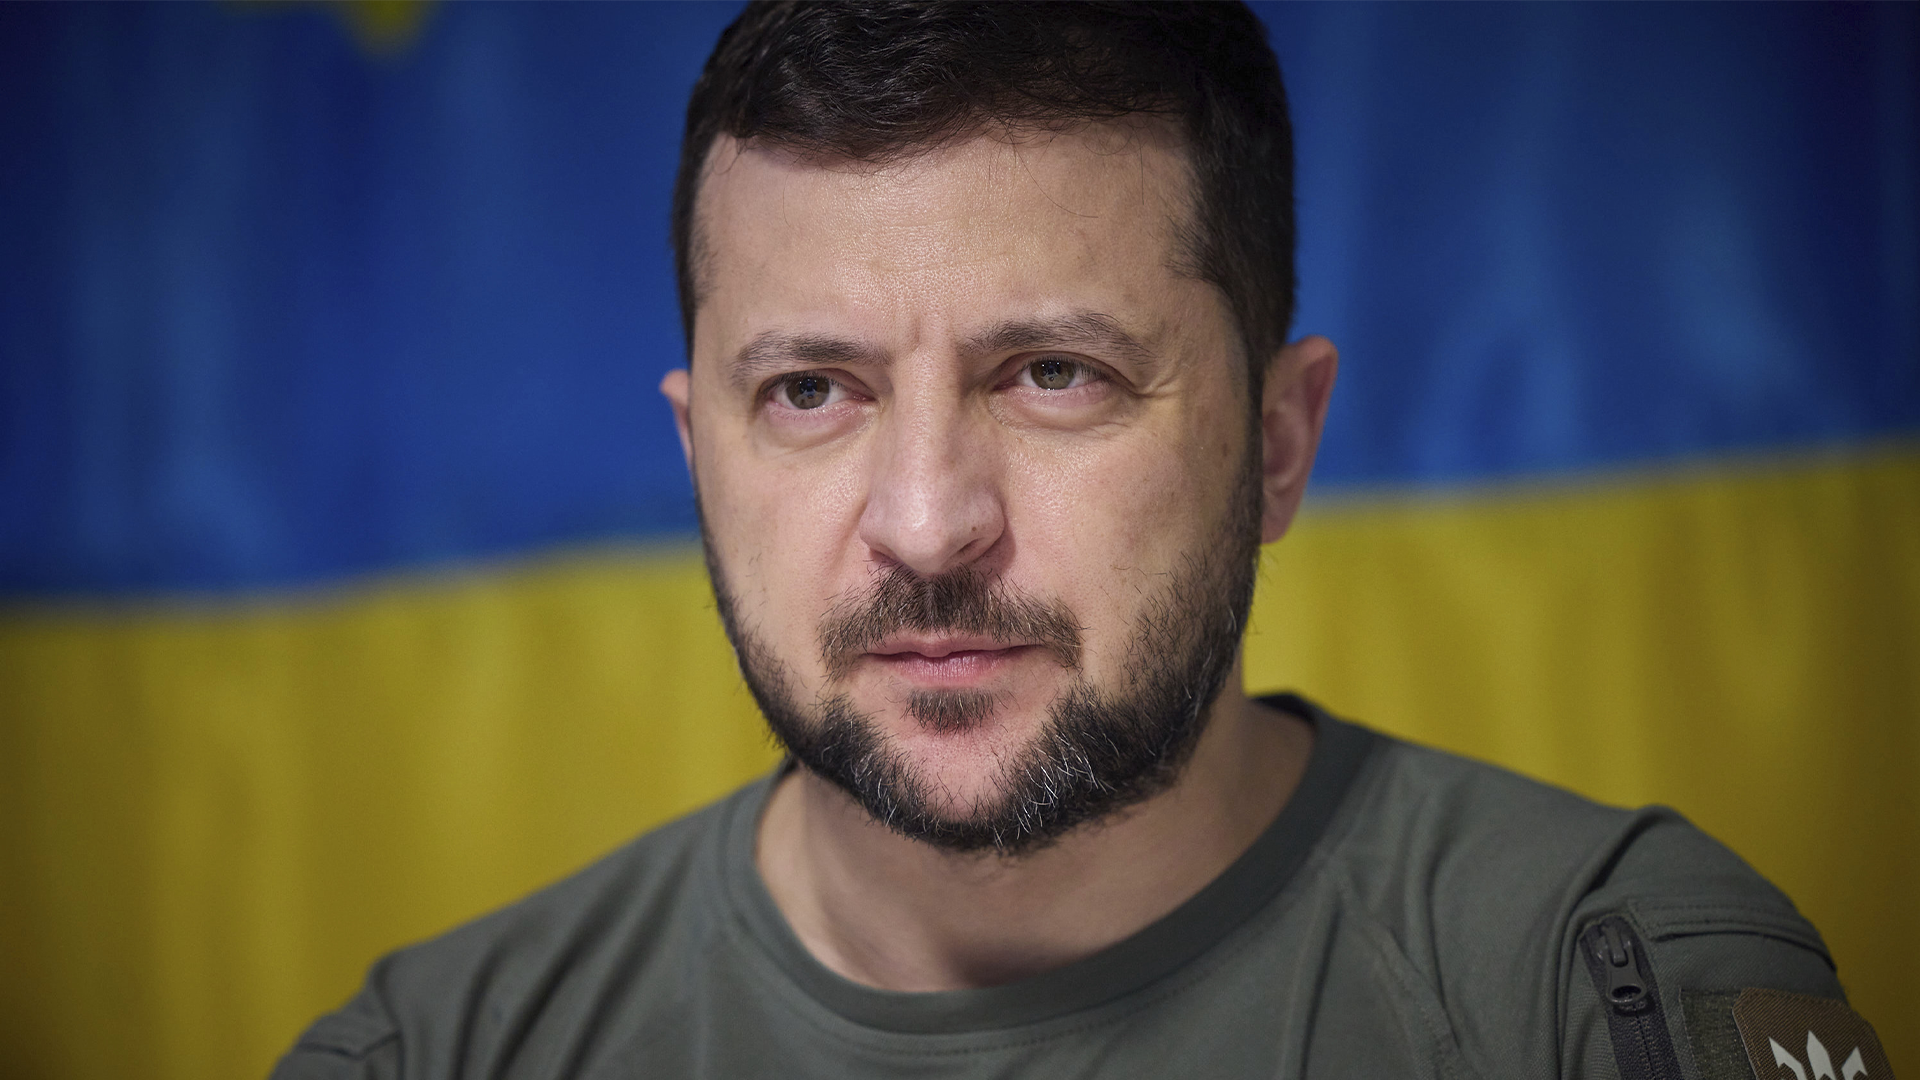 Des analystes ont estimé que cette décision visait à renforcer le contrôle du président ukrainien Volodymyr Zelensky sur l'armée et les agences de sécurité dirigées par des personnes nommées avant la guerre.